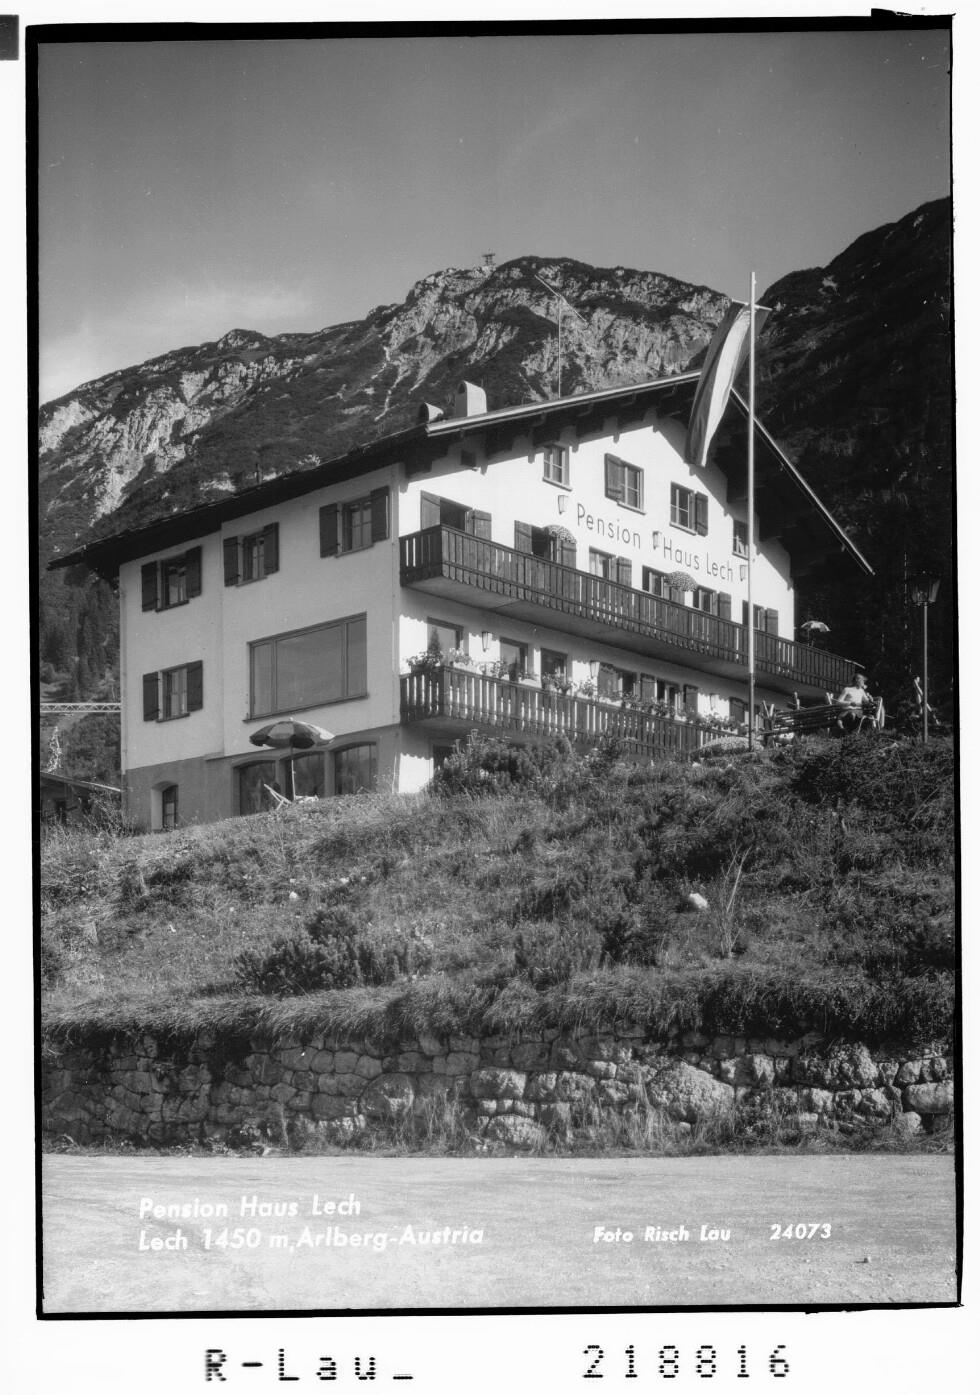 Pension Haus Lech Lech 1450 m, Arlberg - Austria